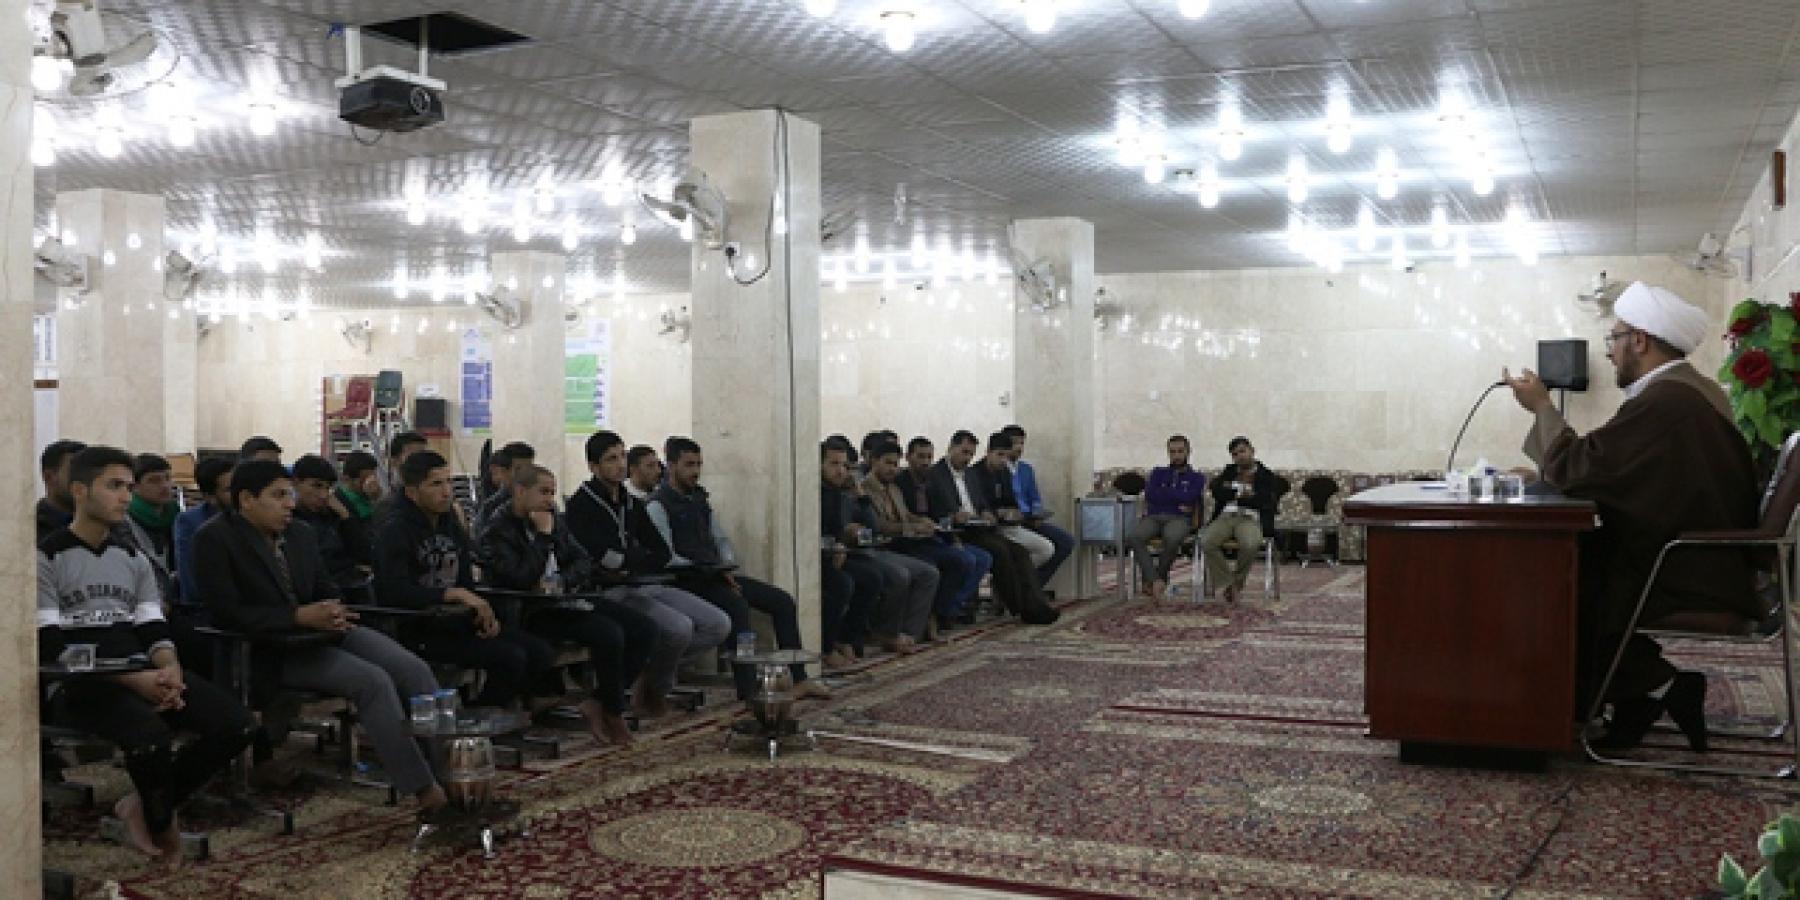 قسم الشؤون الدينية في العتبة العلوية المقدسة يستضيف طلبة الجامعات العراقية في ندوات توجيهية أخلاقية عقائدية